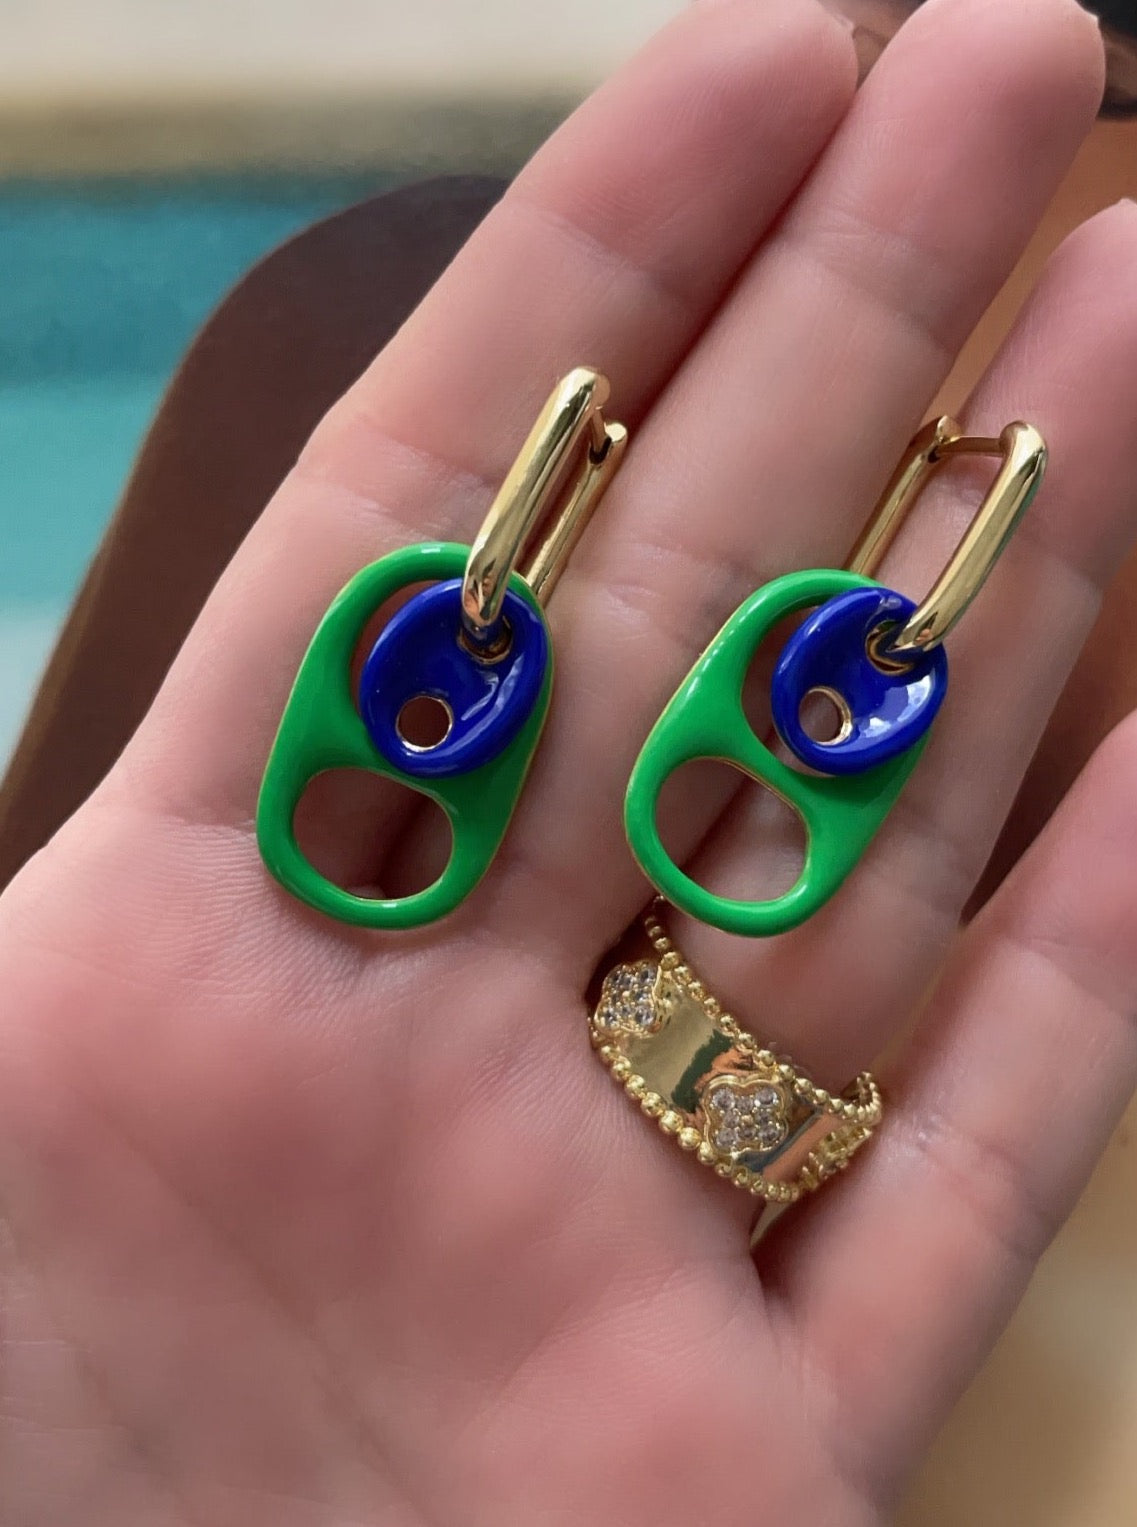 Combined Green/Blue soda caps earrings